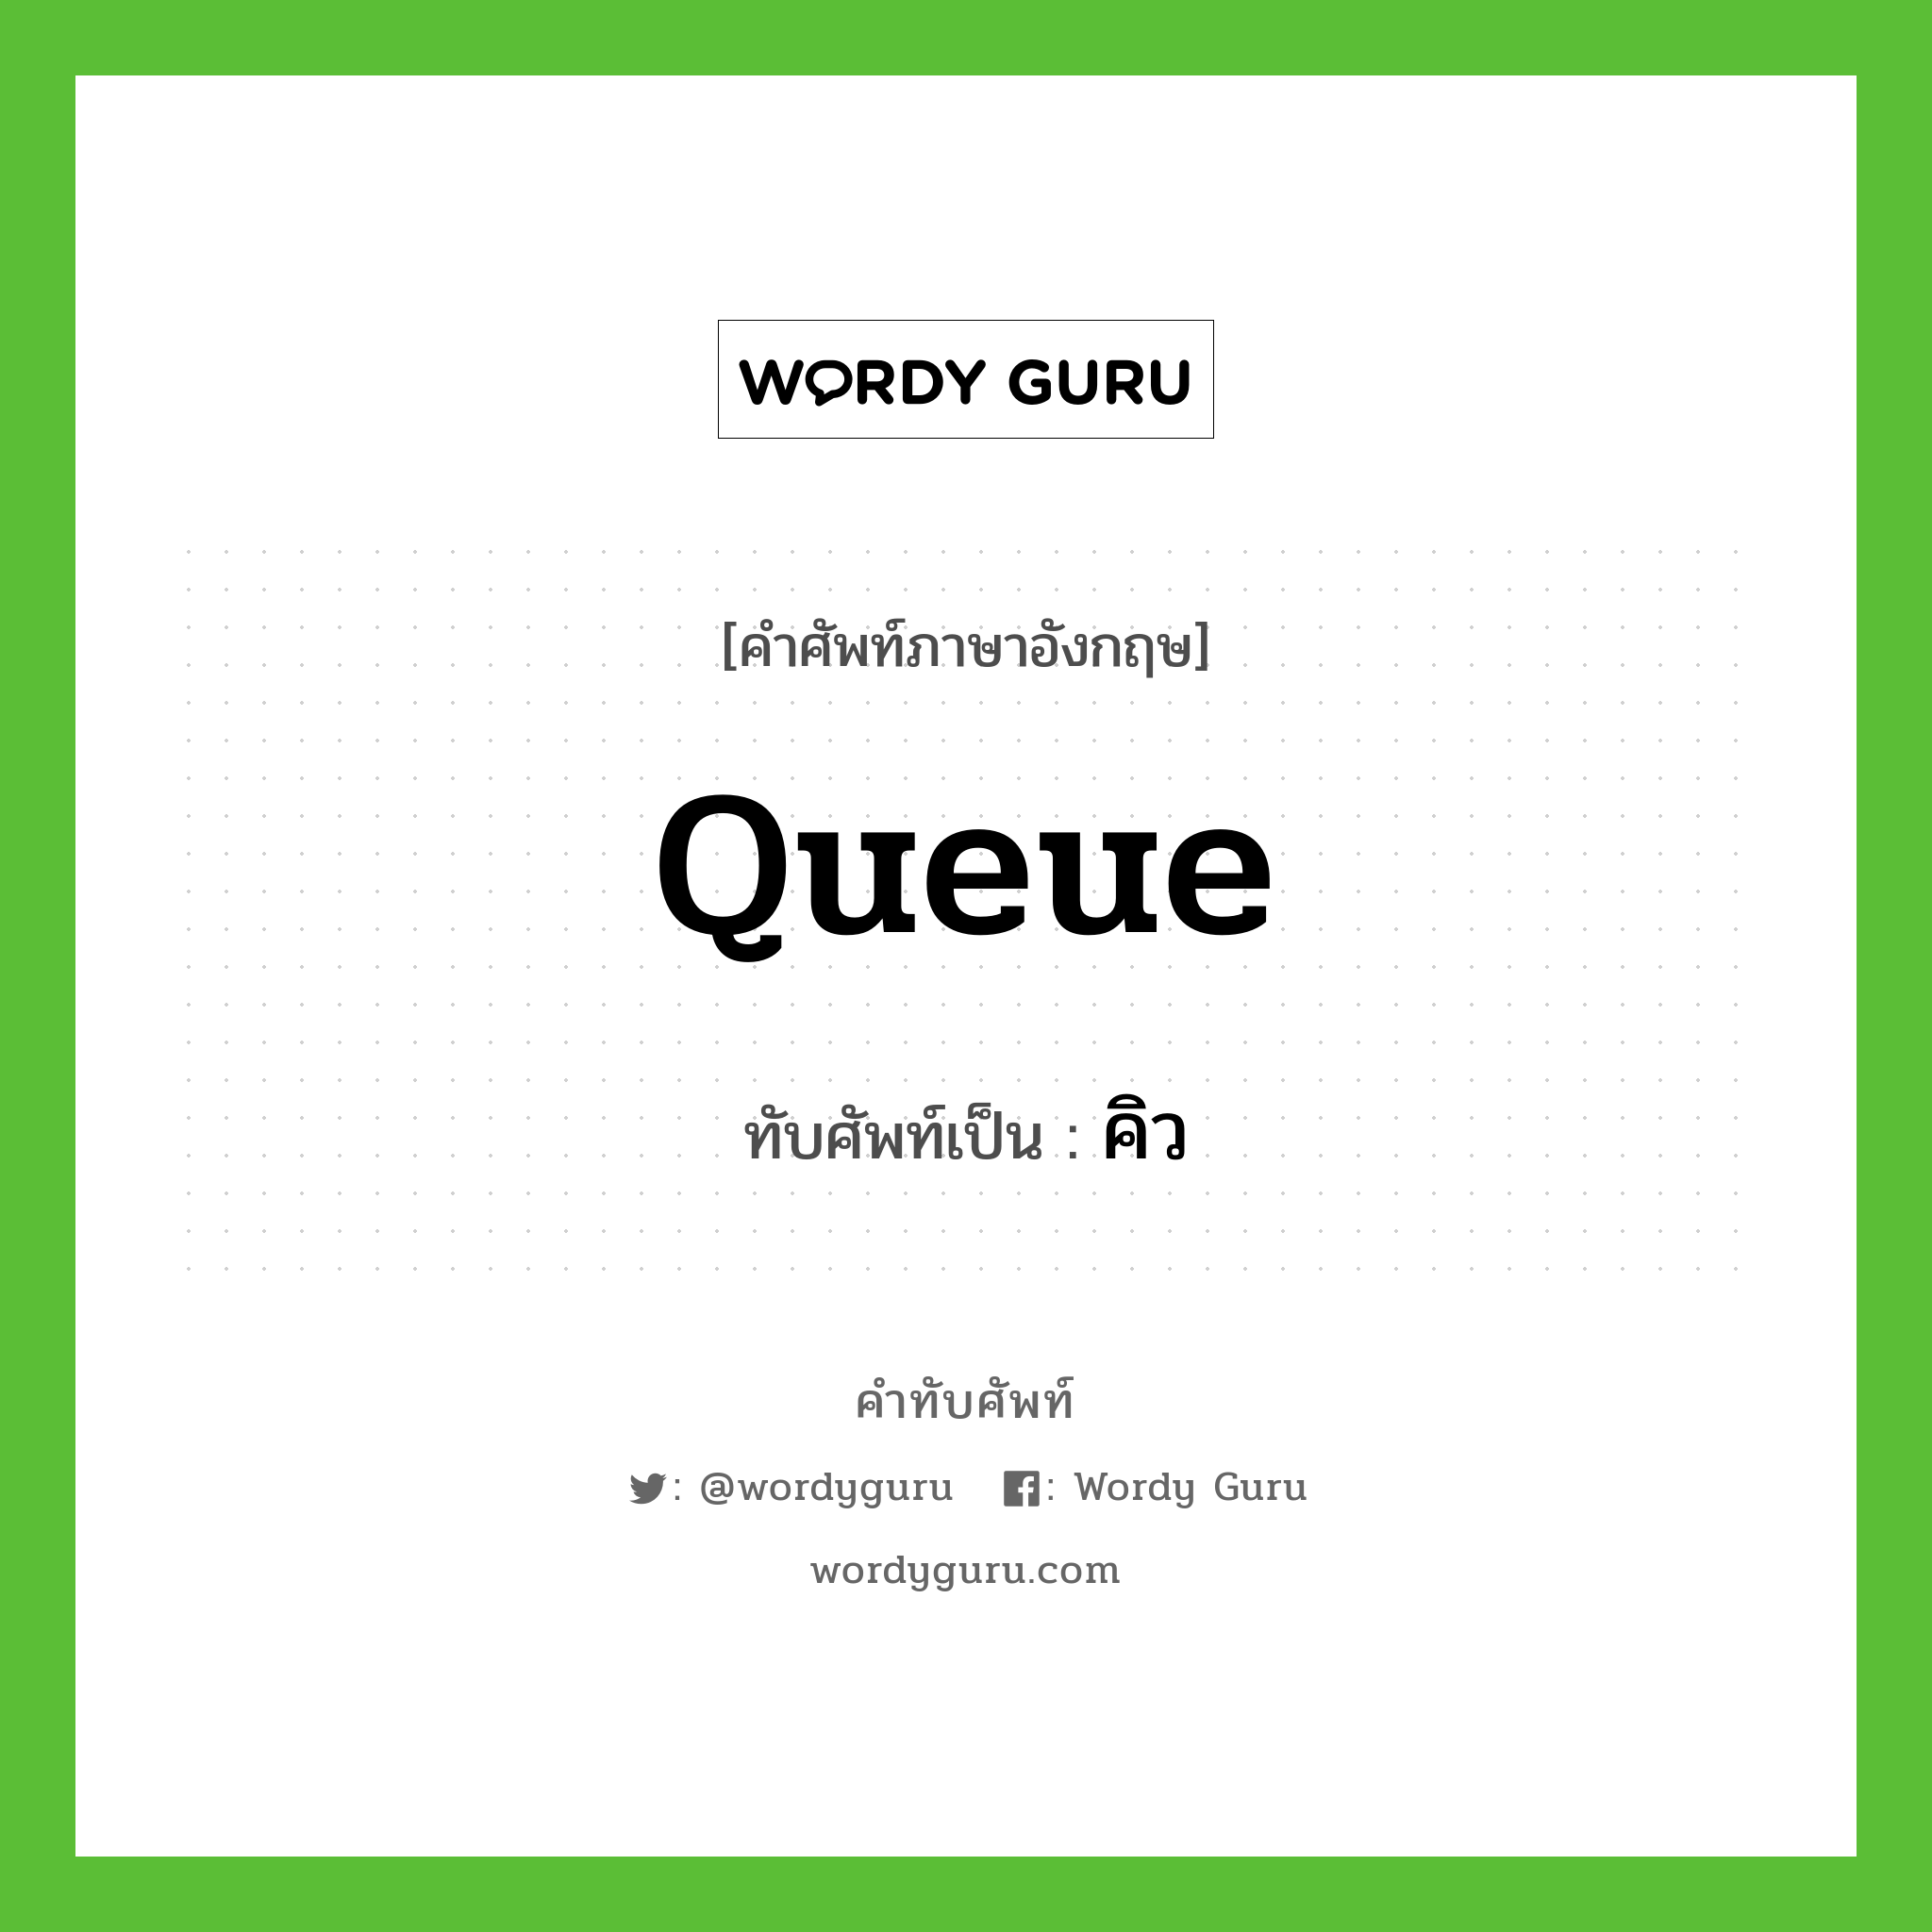 queue เขียนเป็นคำไทยว่าอะไร?, คำศัพท์ภาษาอังกฤษ queue ทับศัพท์เป็น คิว